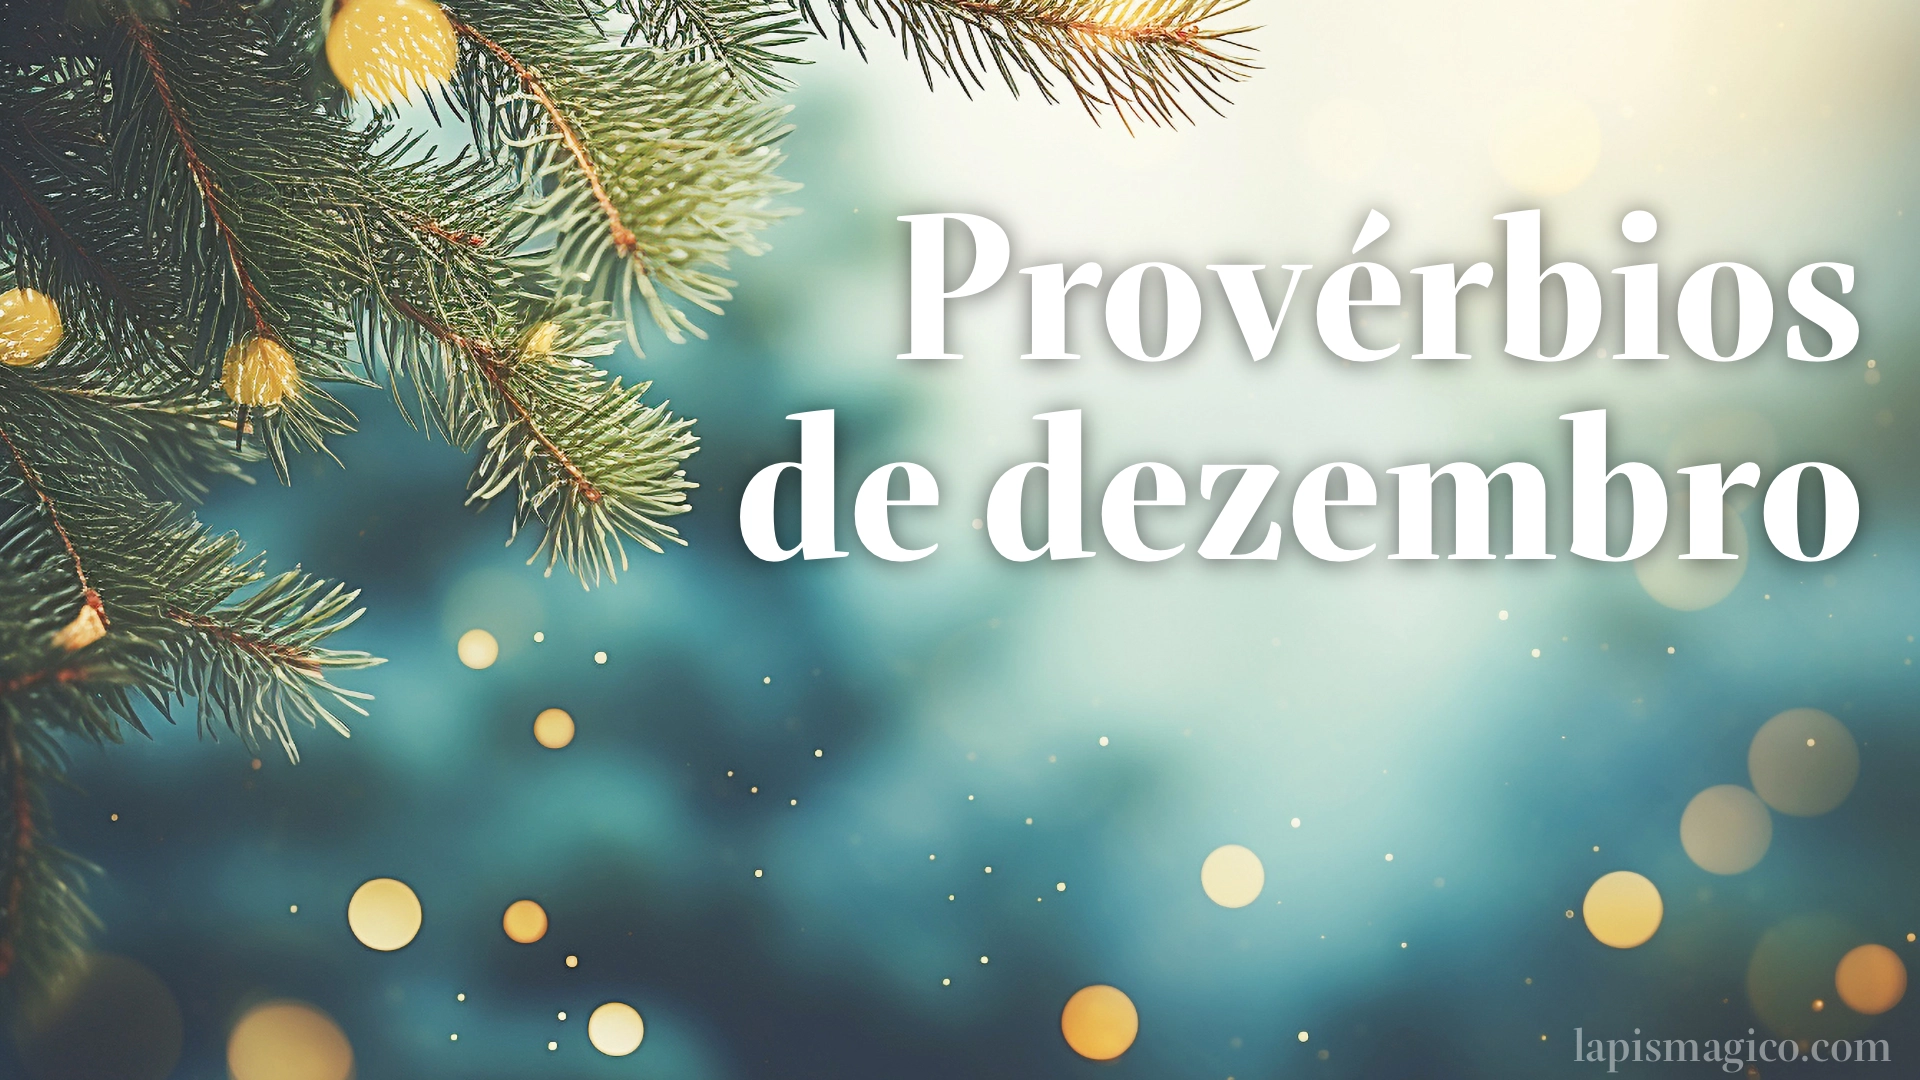 Dezembro, 125 provérbios sobre o último mês do ano